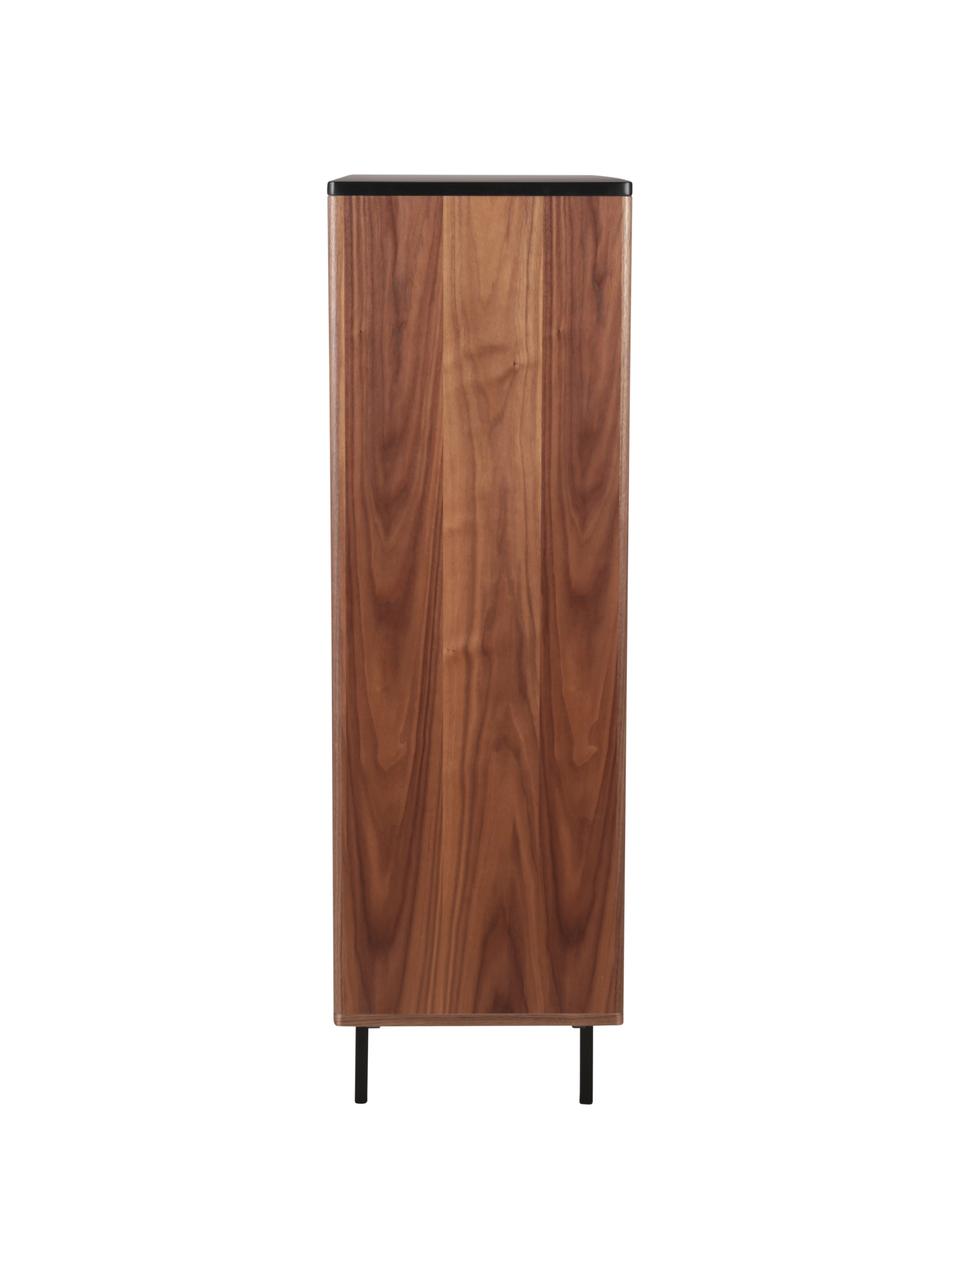 Vysoká skříňka s žebrovaným dekorem Nuance, Tmavé dřevo, Š 100 cm, V 140 cm